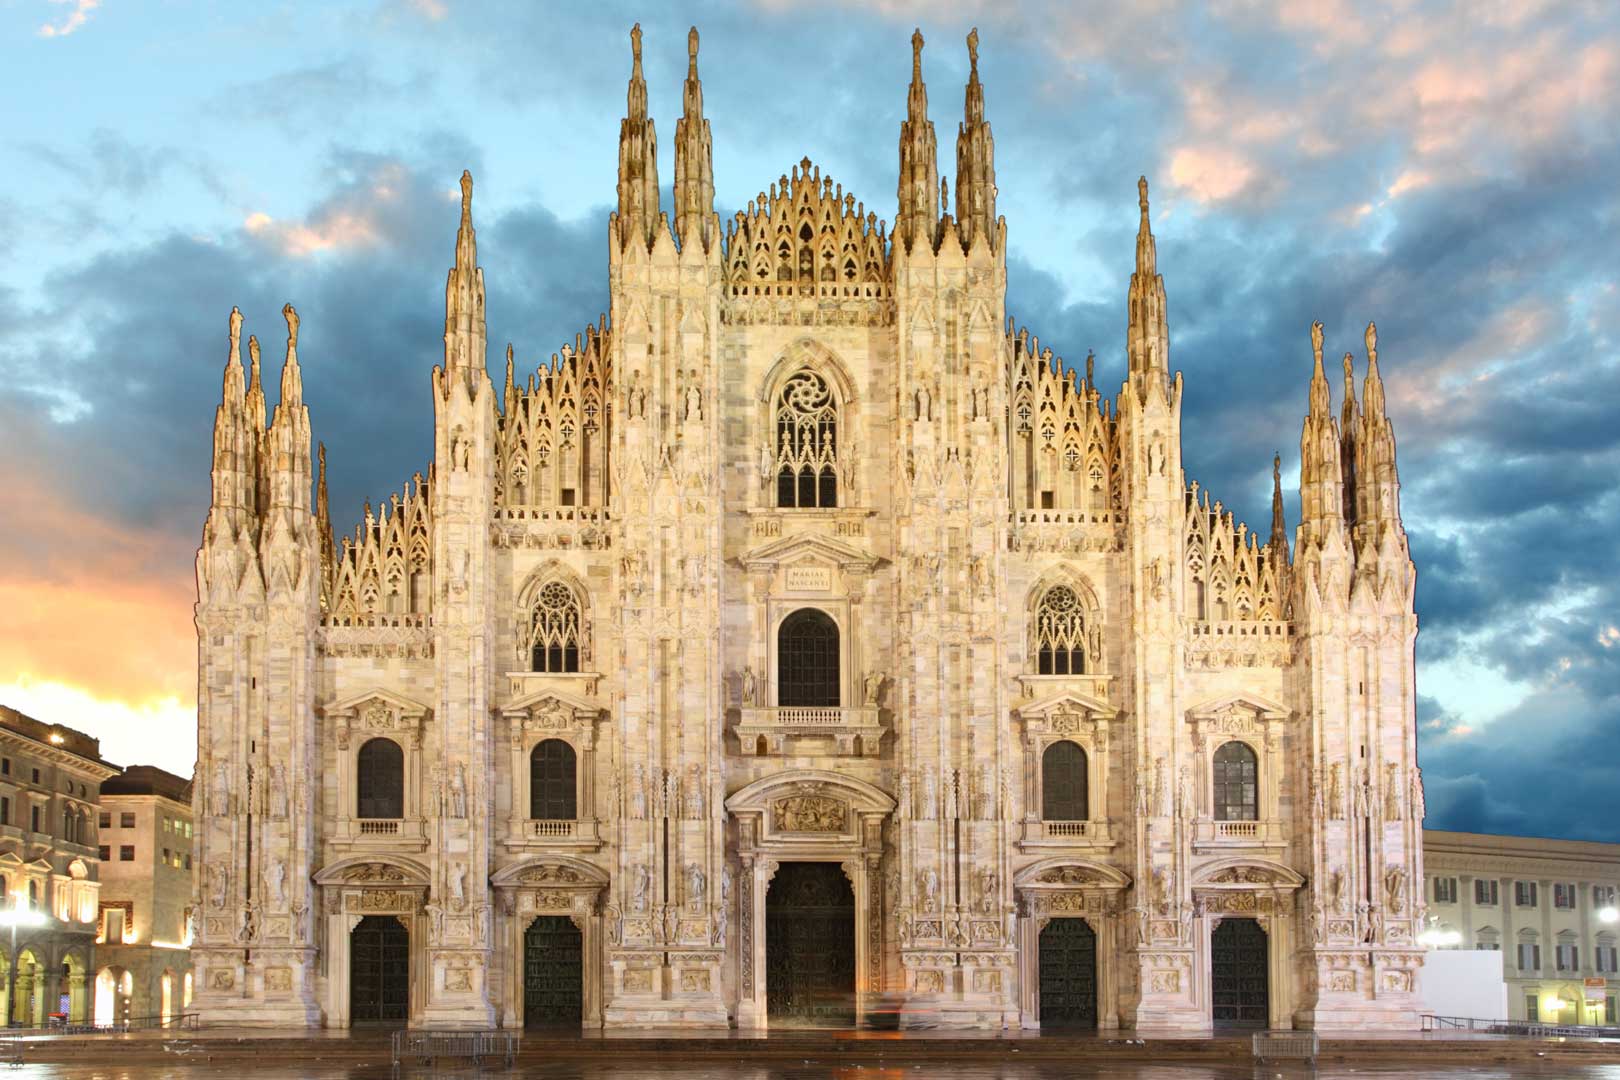 Il Duomo di Milano svela i suoi angoli nascosti | Flawless Milano